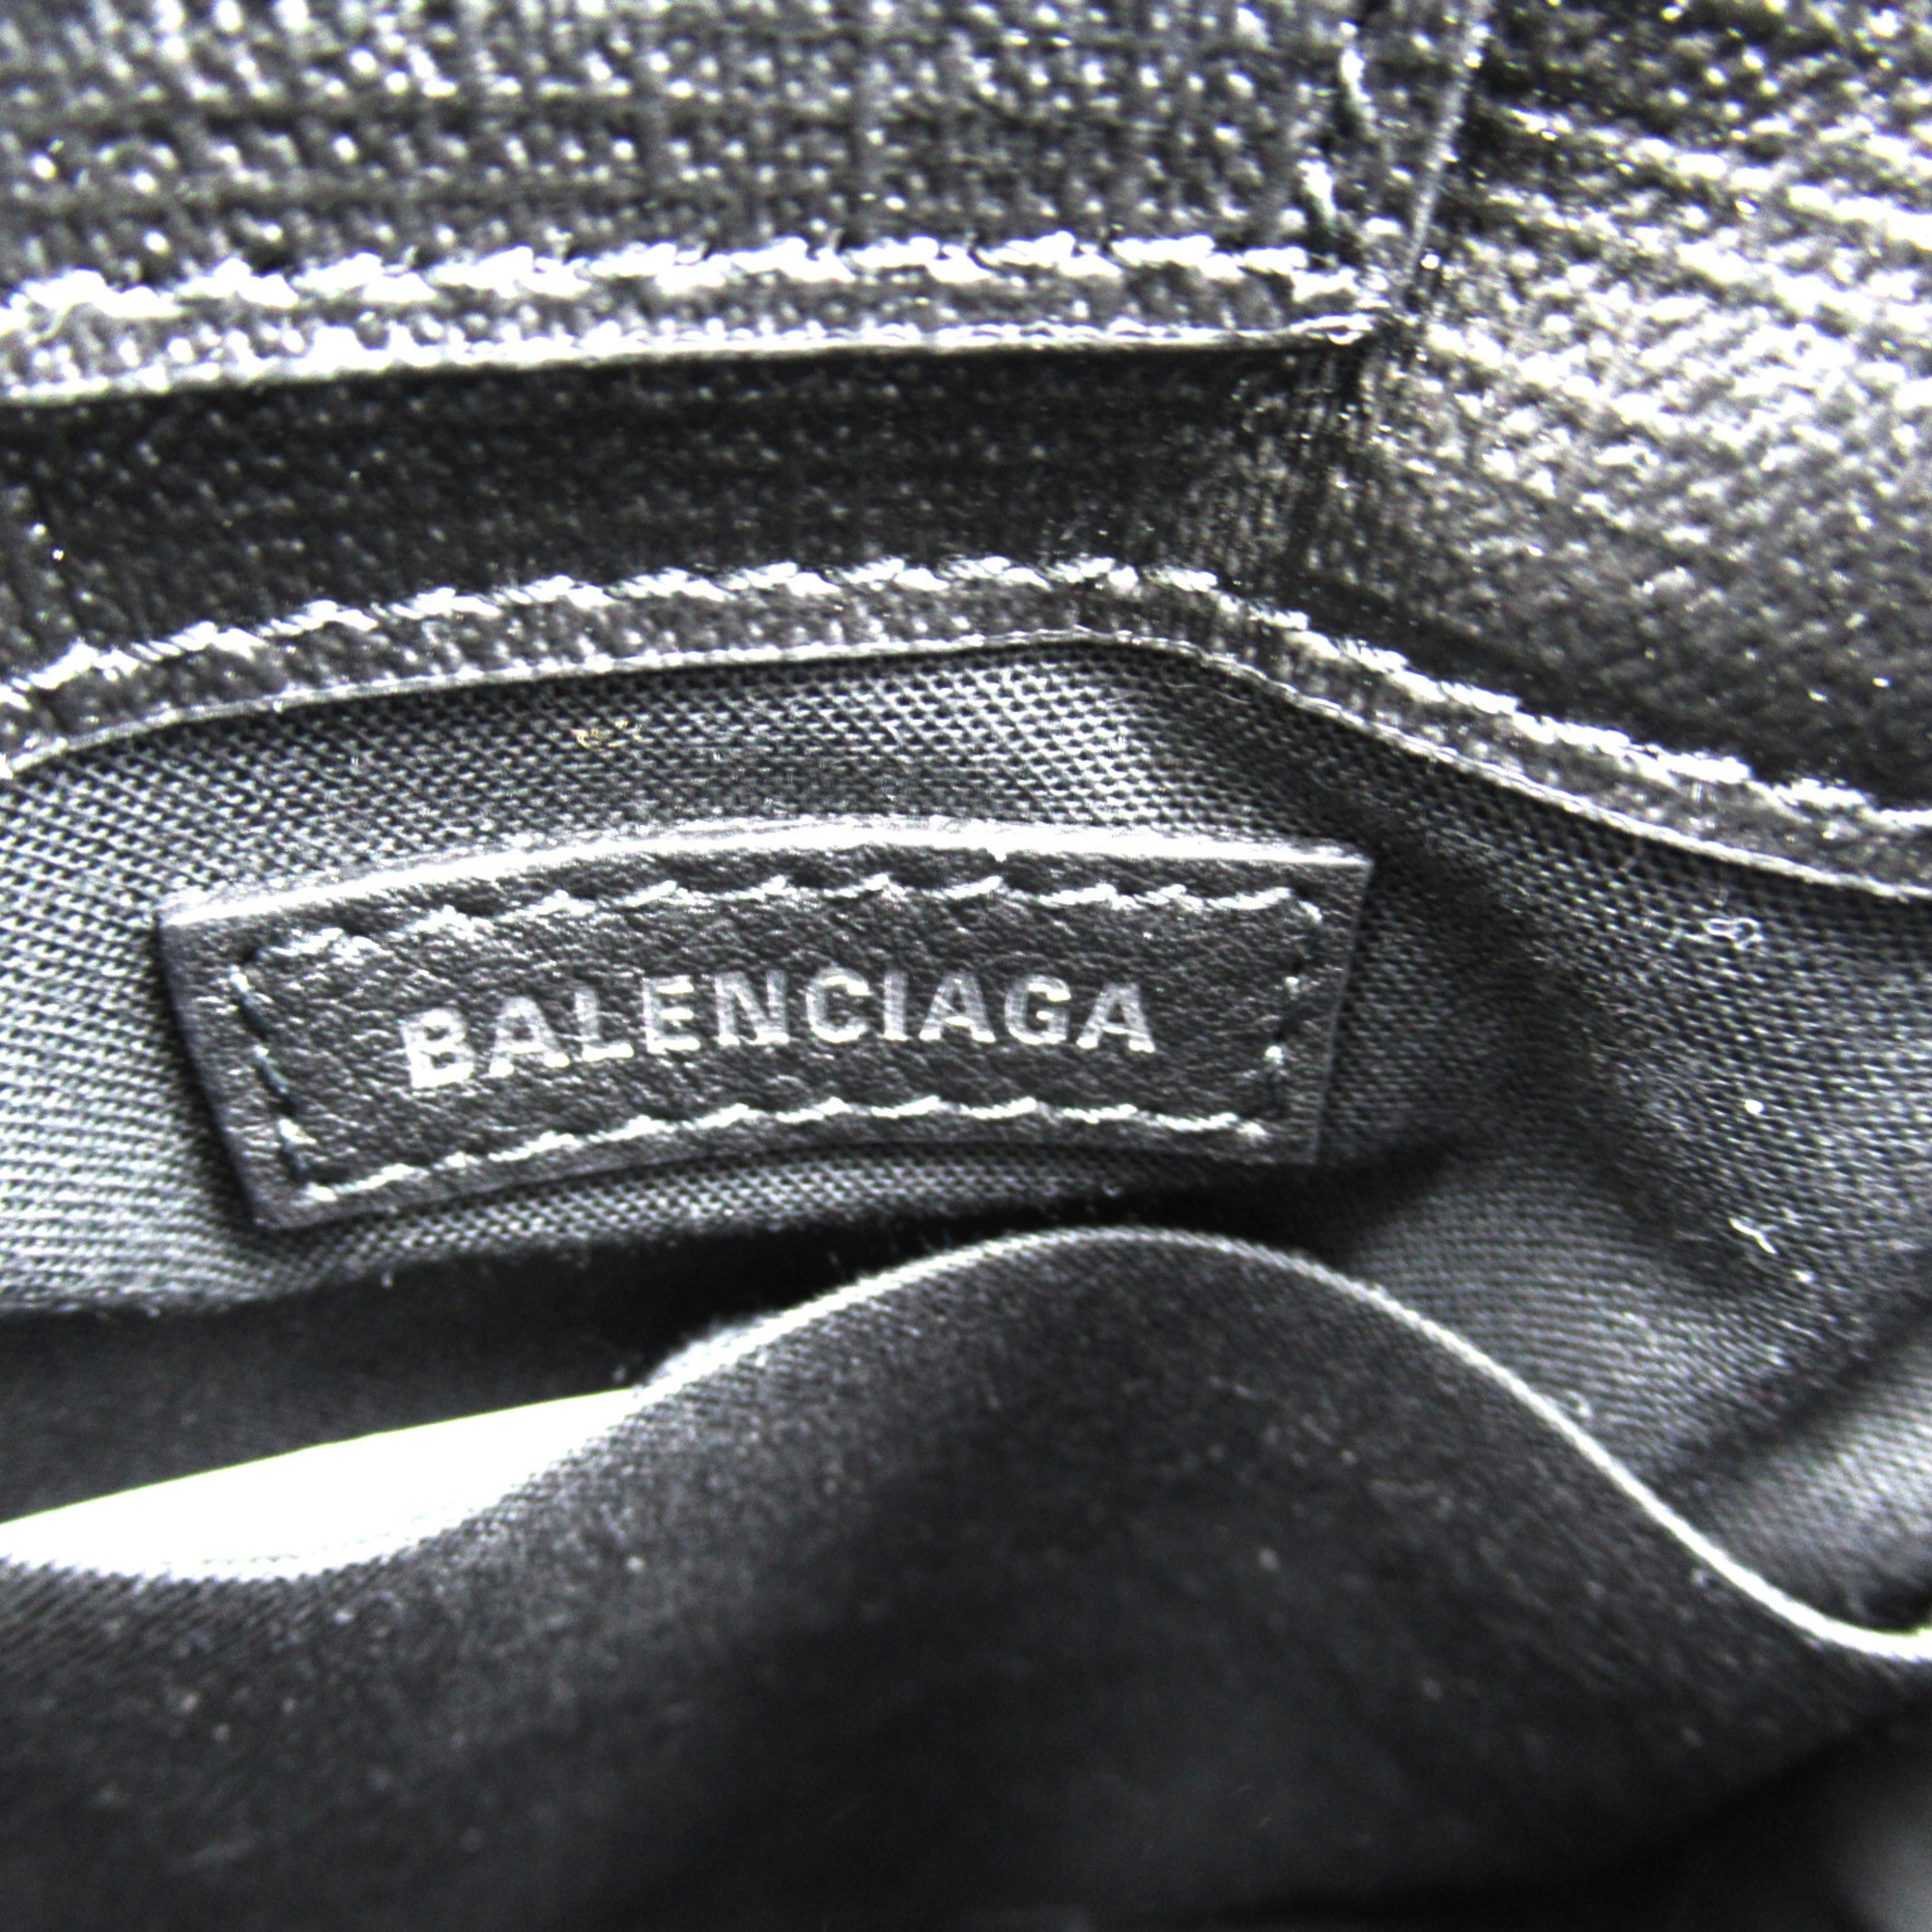 BALENCIAGA Smartphone Shoulder Bag Black Calfskin (cowhide) 7577730AI2N1000